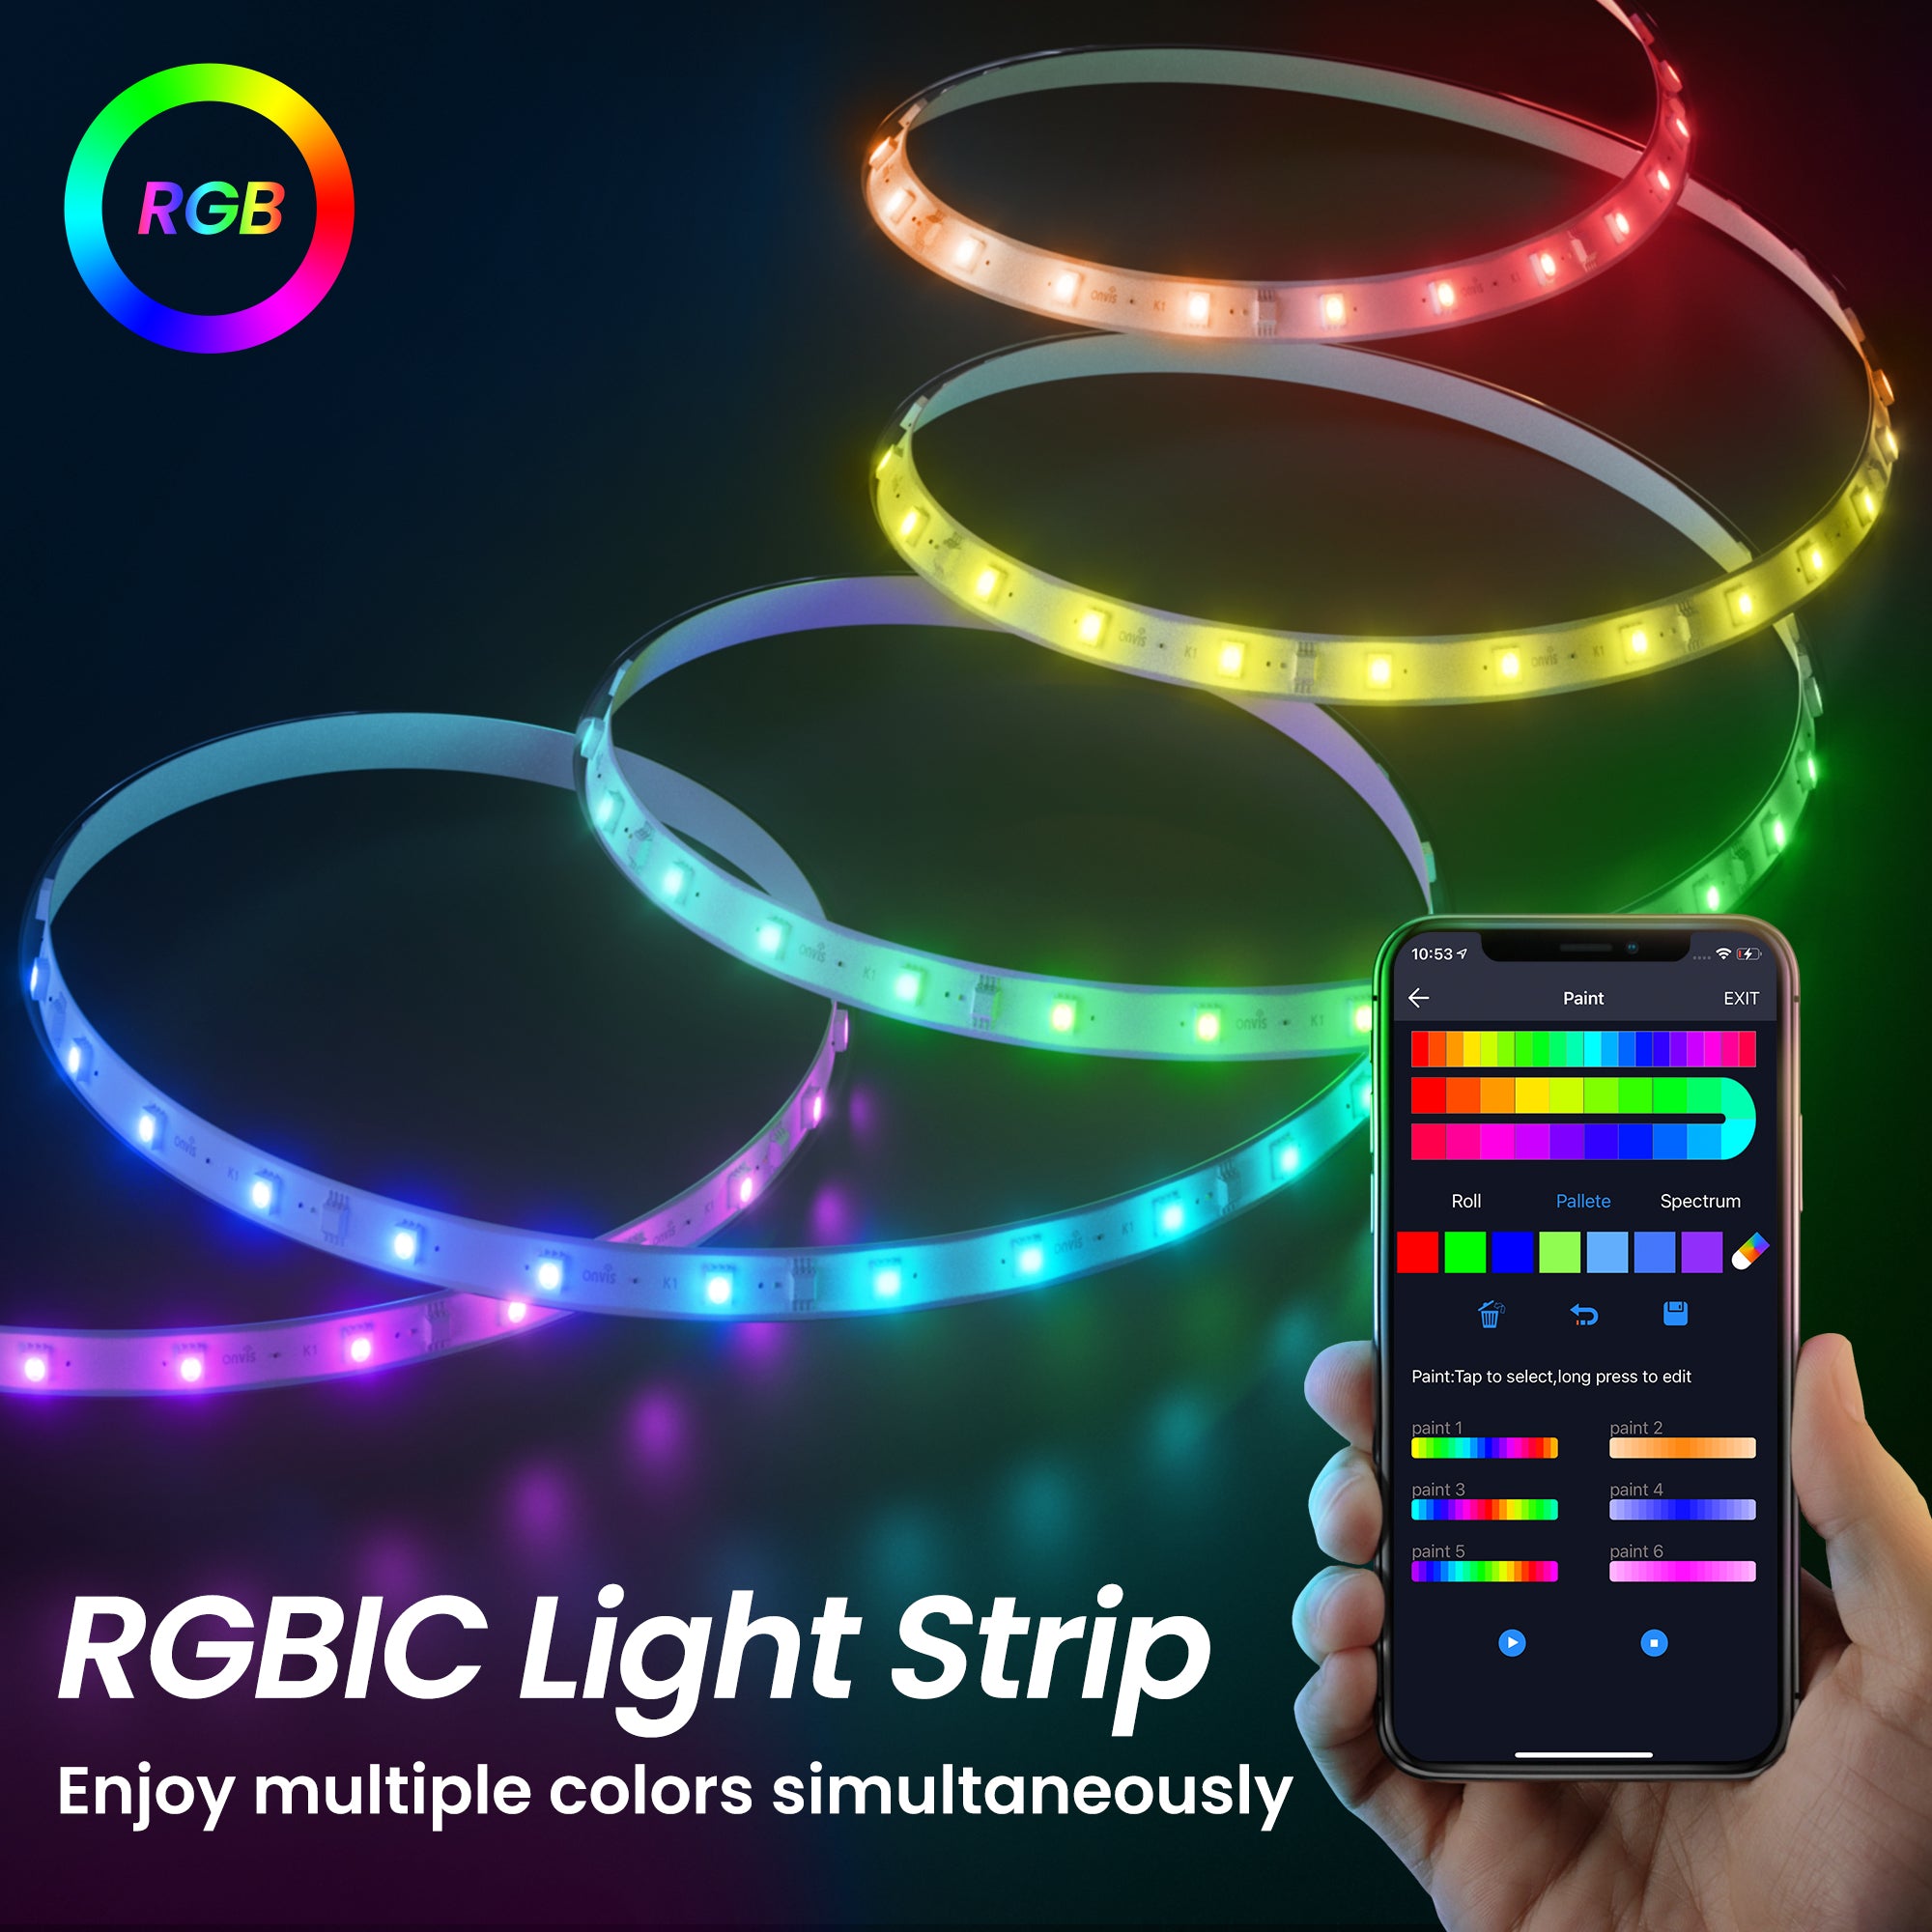 Økologi skildpadde indad Onvis Multicolor Smart RGBIC LED Light Strip Works with Apple HomeKit,